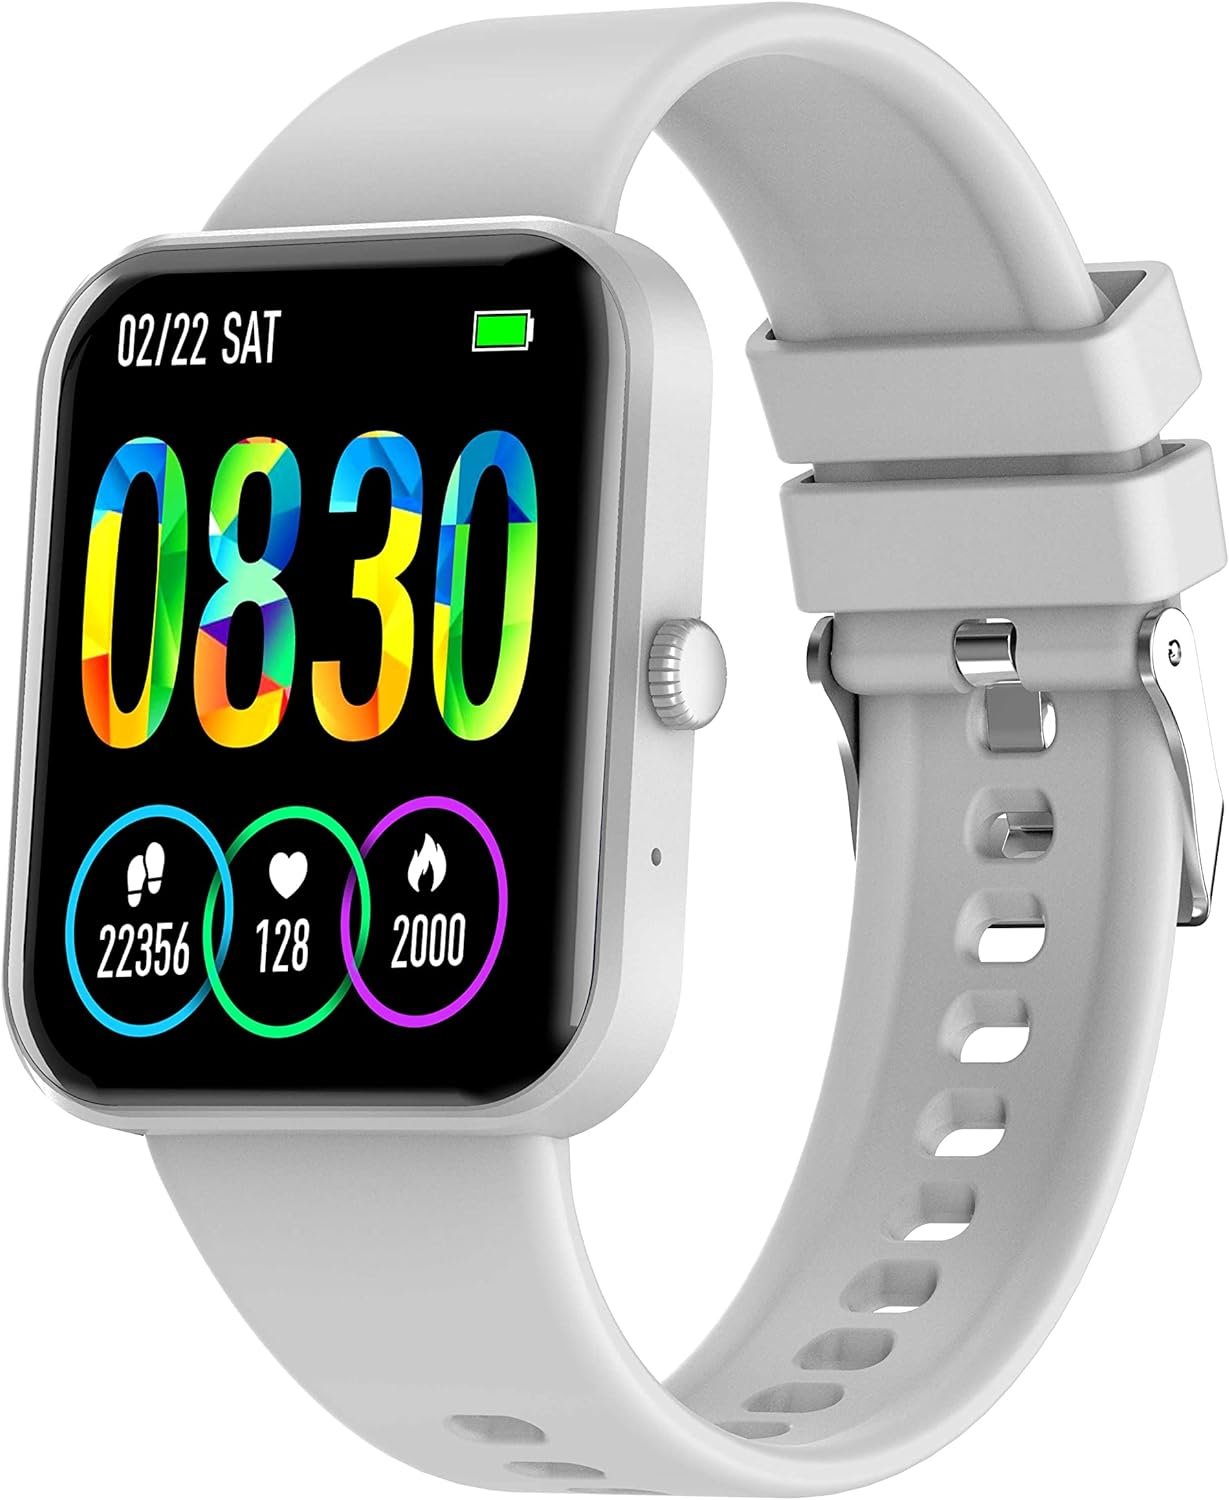 Ofertas do dia: seleção de smartwatch com até 41% off!